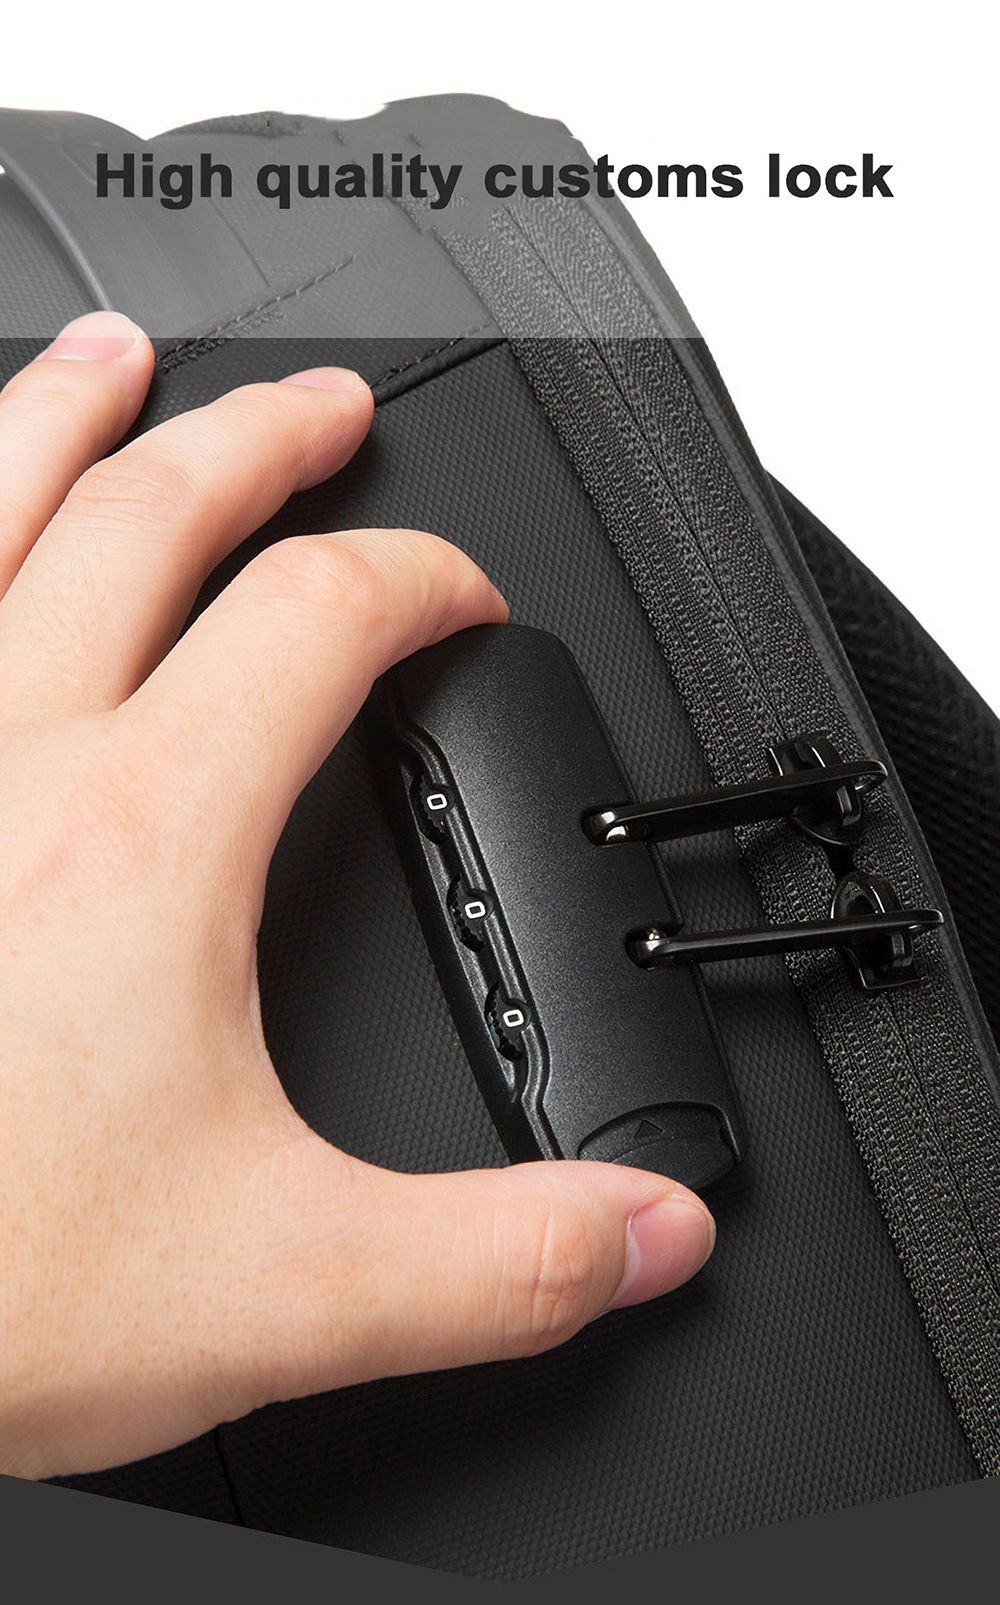 BANGE-Anti-theft-Backpack-Laptop-Bag-Shoulder-Bag-USB-Charging-Men-Business-Travel-Storage-Bag-for-1-1767118